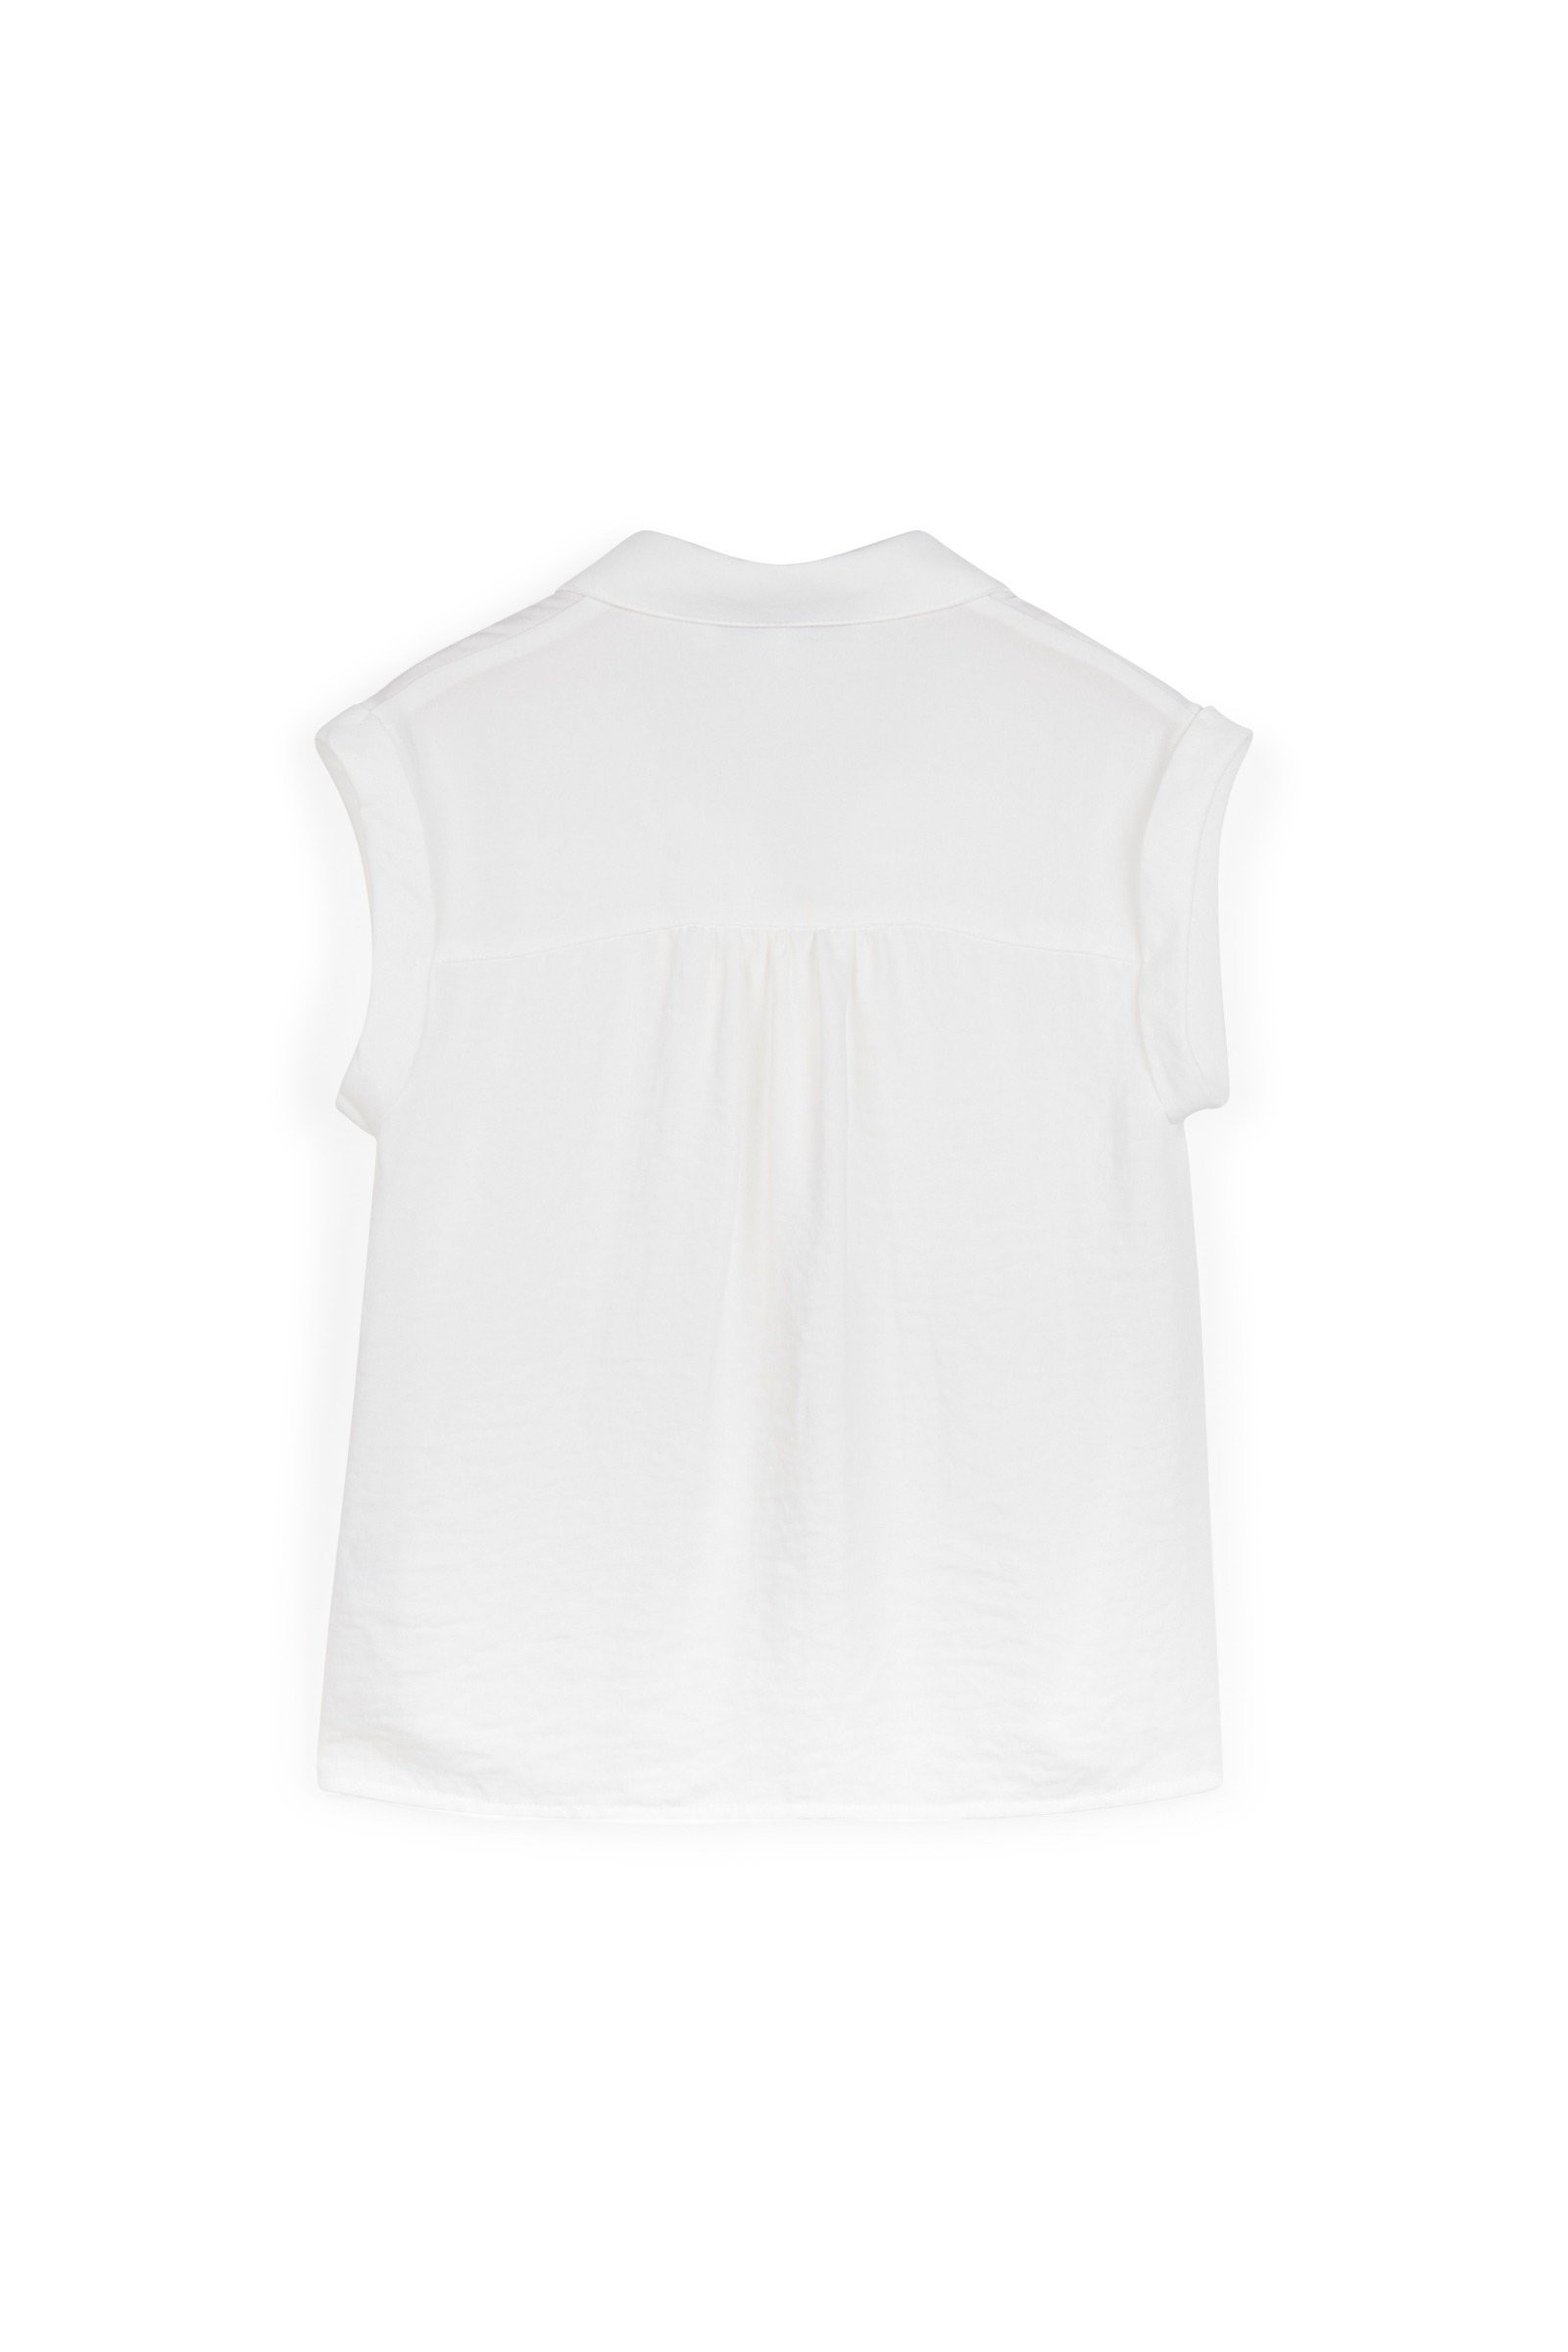 CKS Kids - ECHO - blouse short sleeves - white